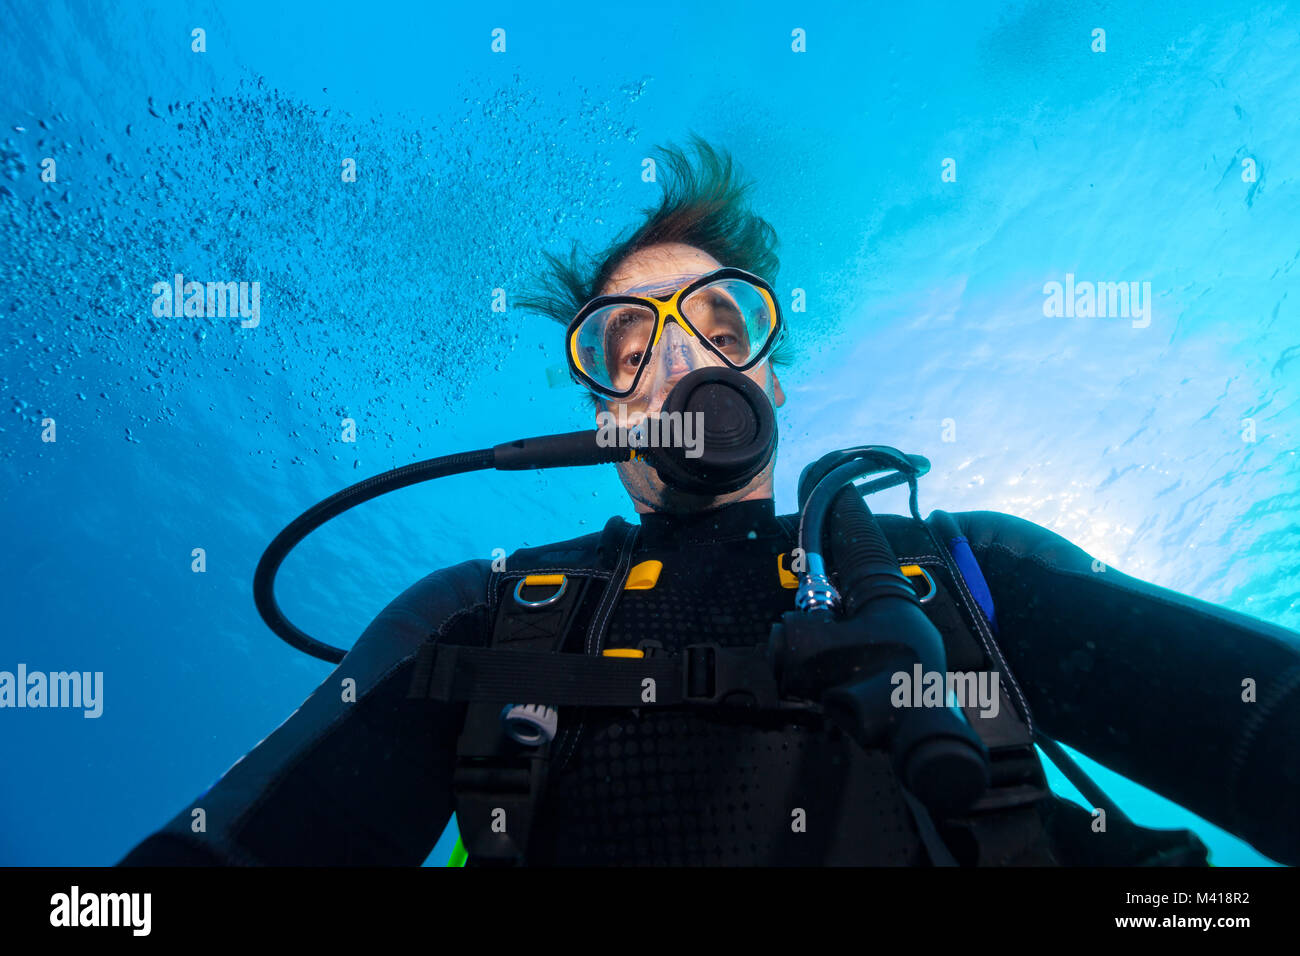 Young man scuba diver selfie, underwater activities Stock Photo